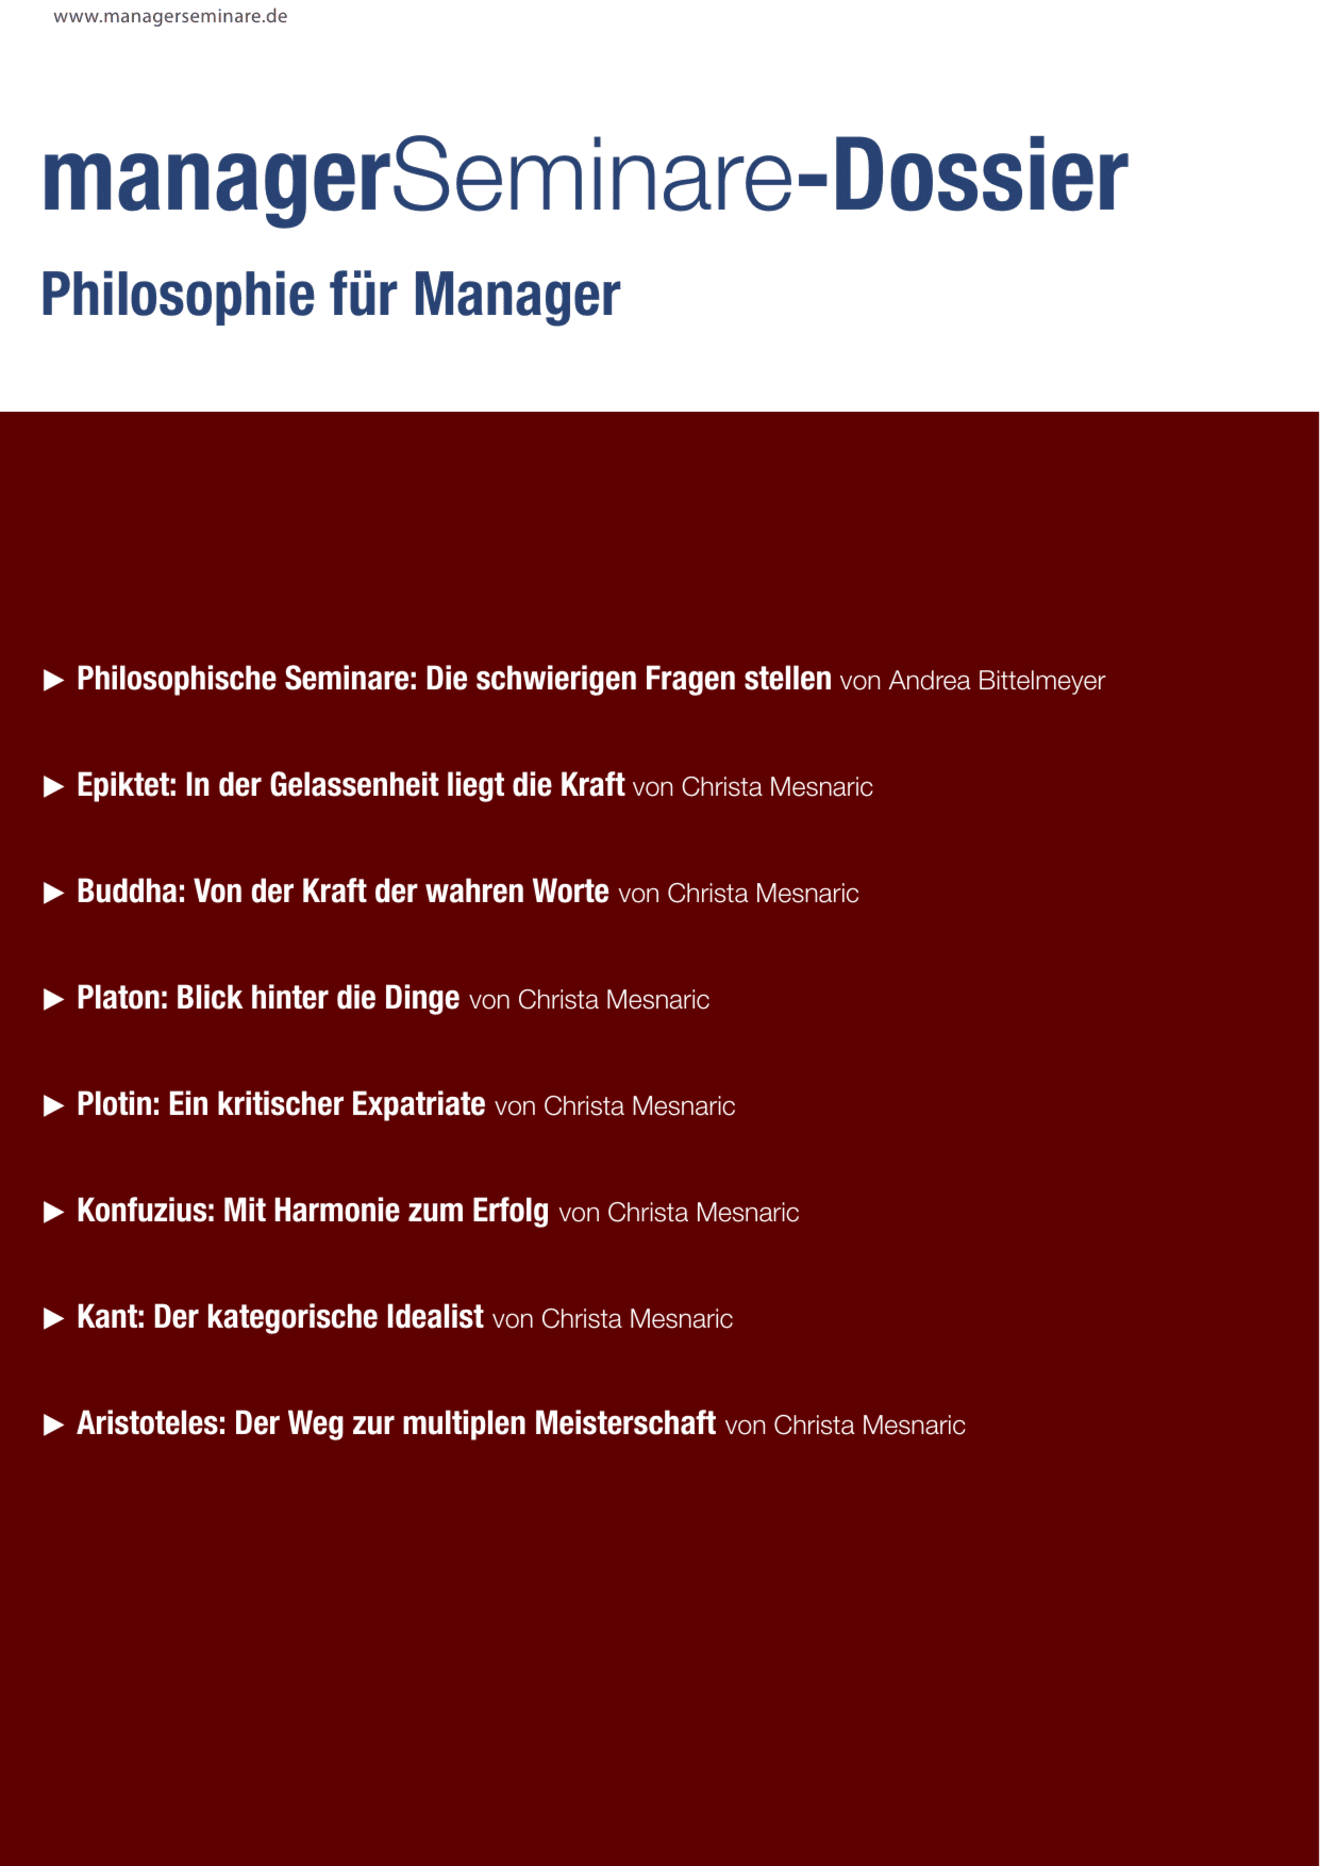 Dossier Philosophie für Manager, Teil 1